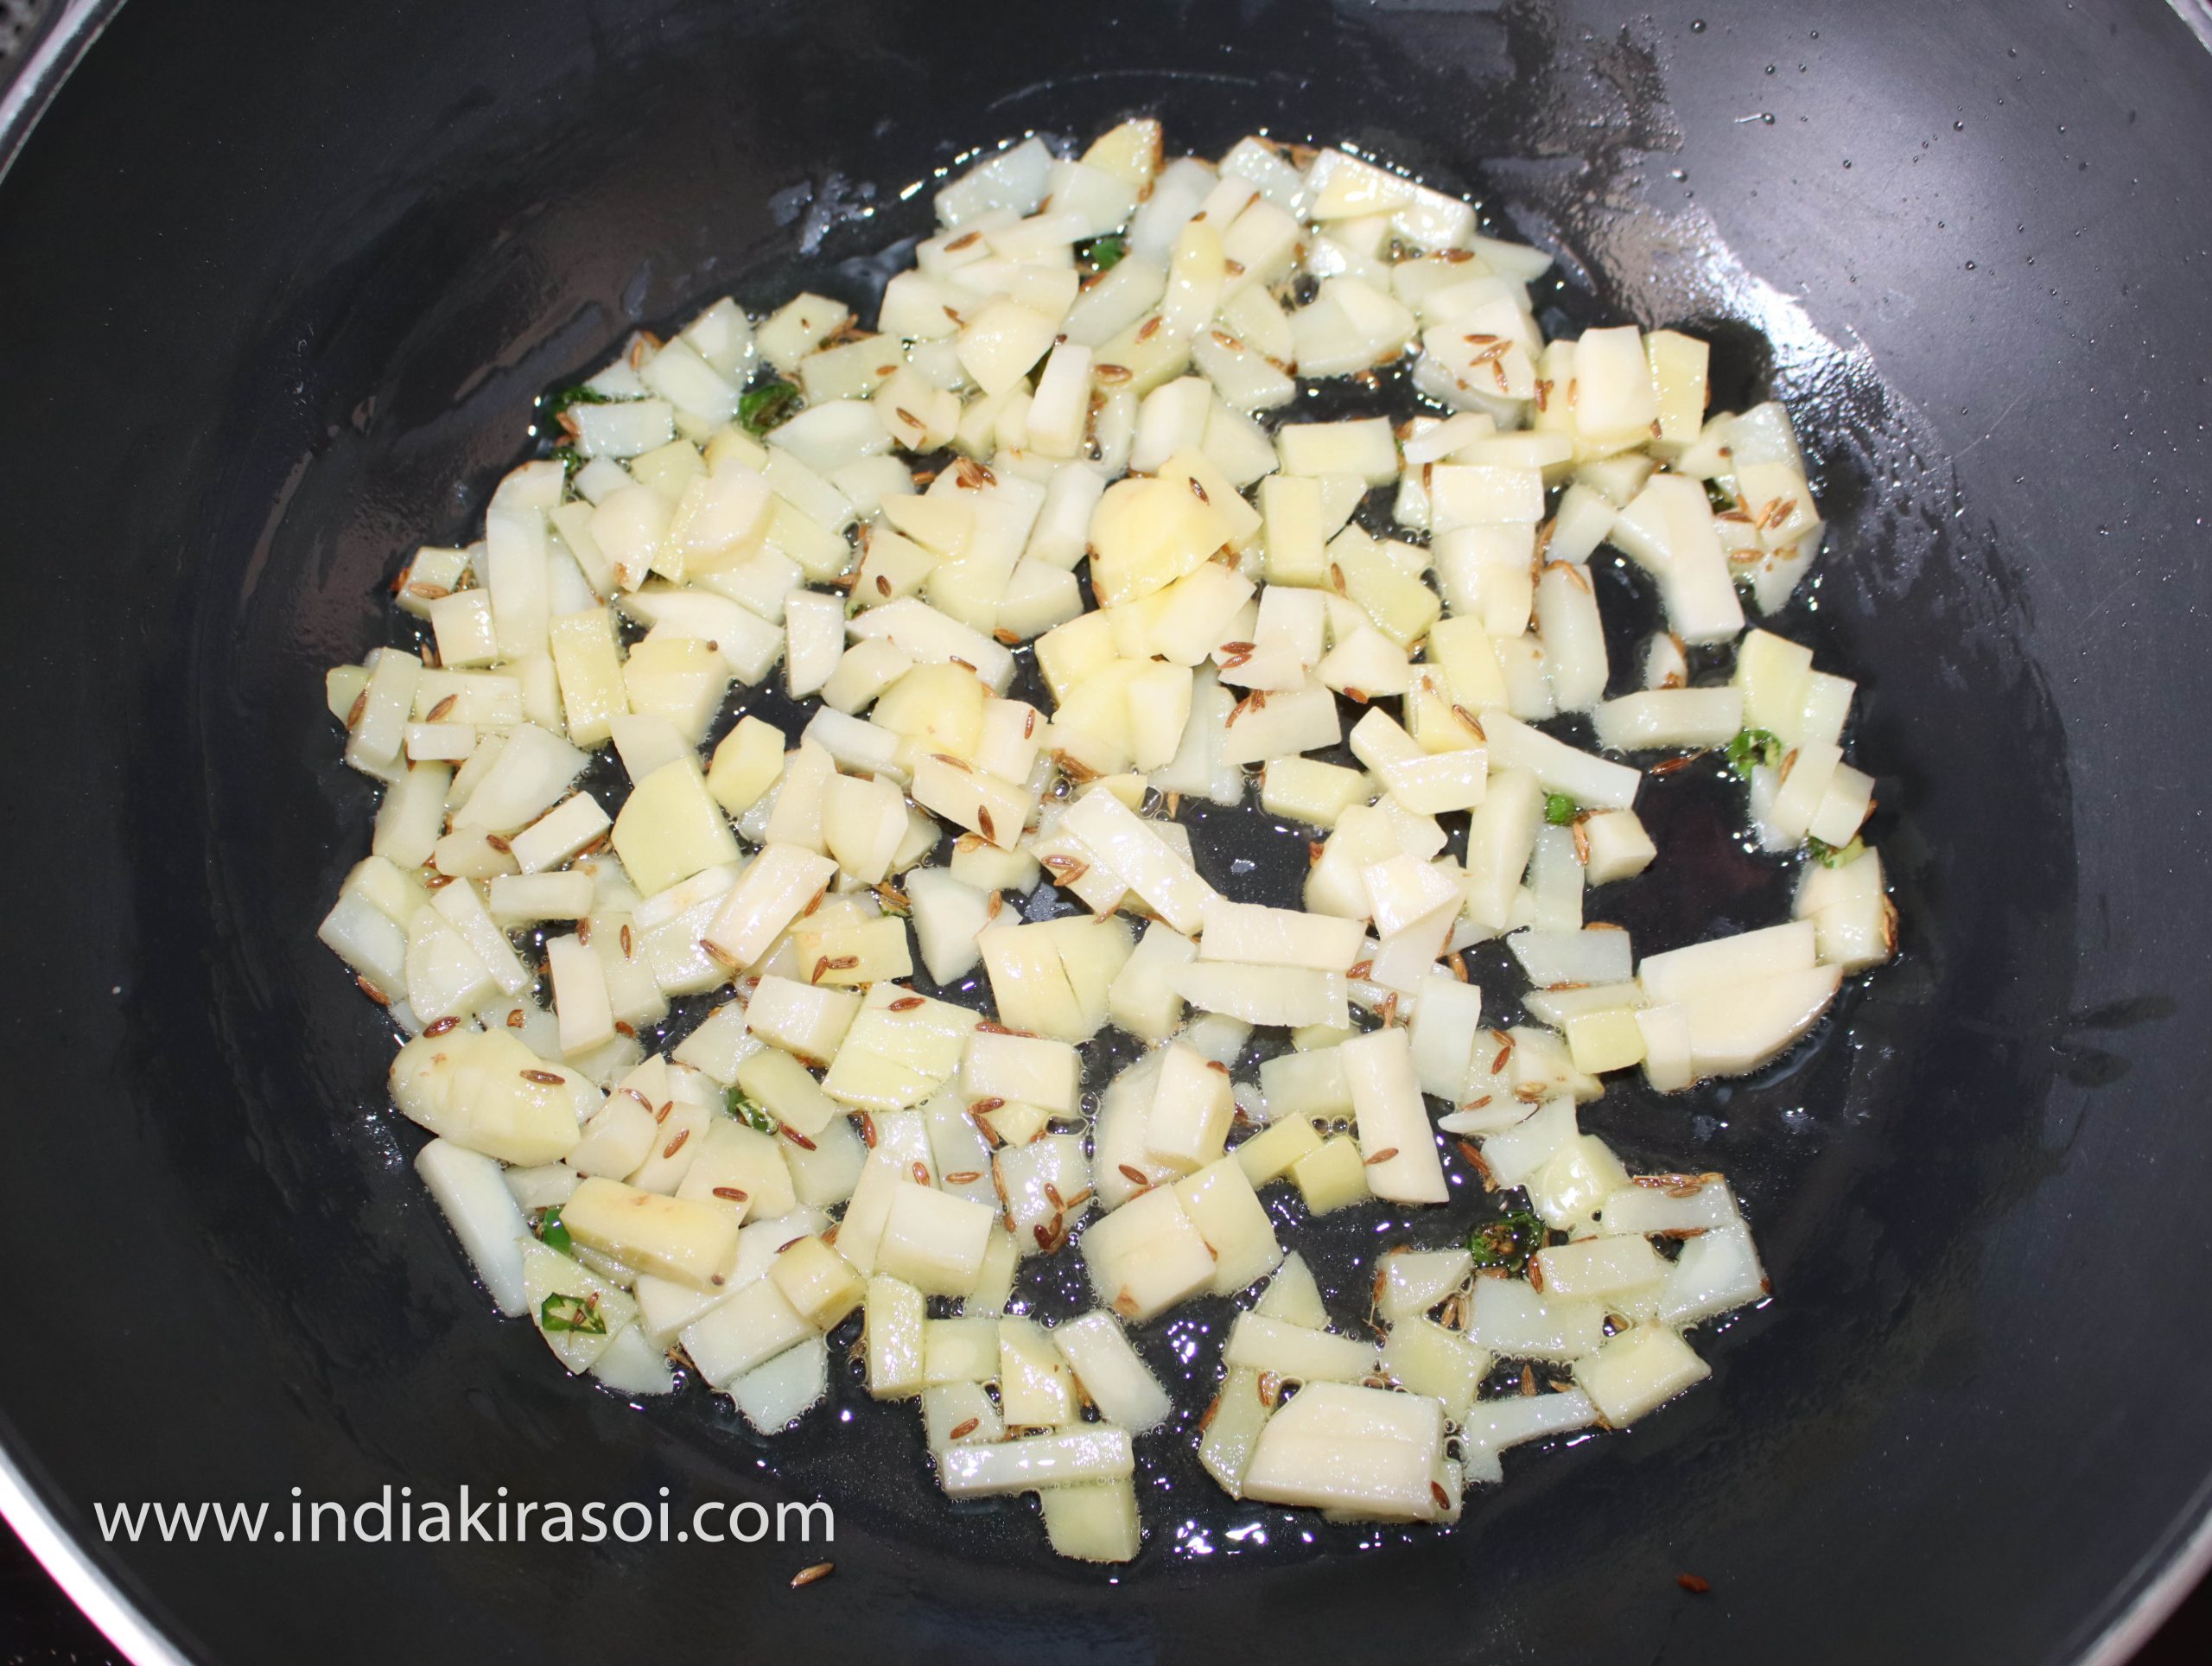 Mix chopped potatoes.